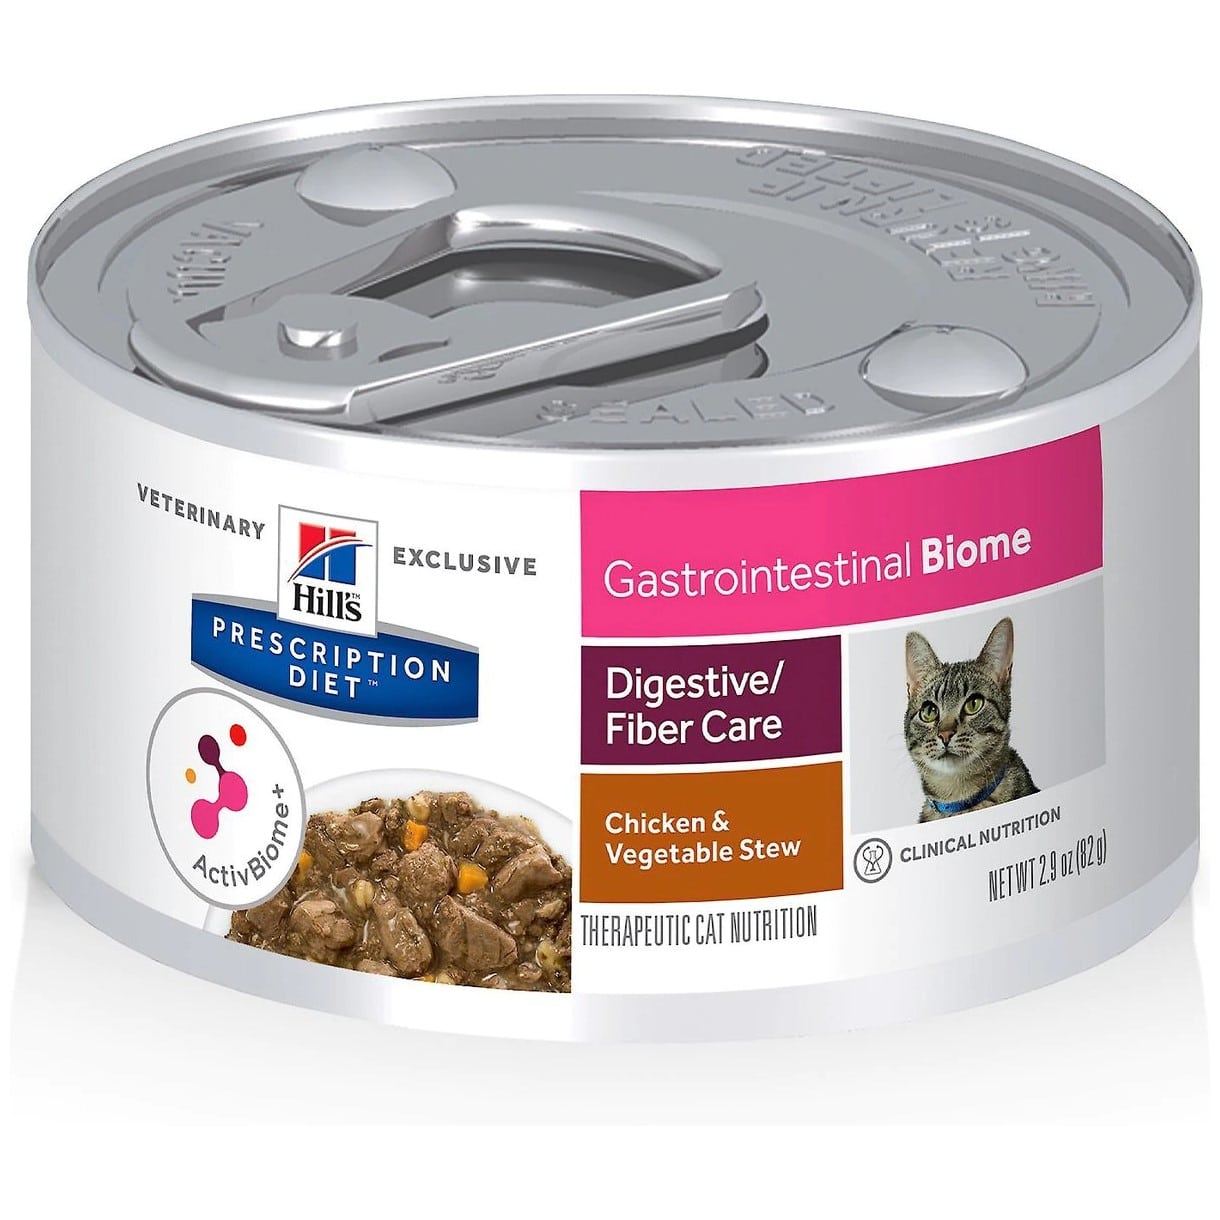 Hill's Prescription Diet Gastrointestinal Biome Chicken & Vegetable Stew Wet Cat Food